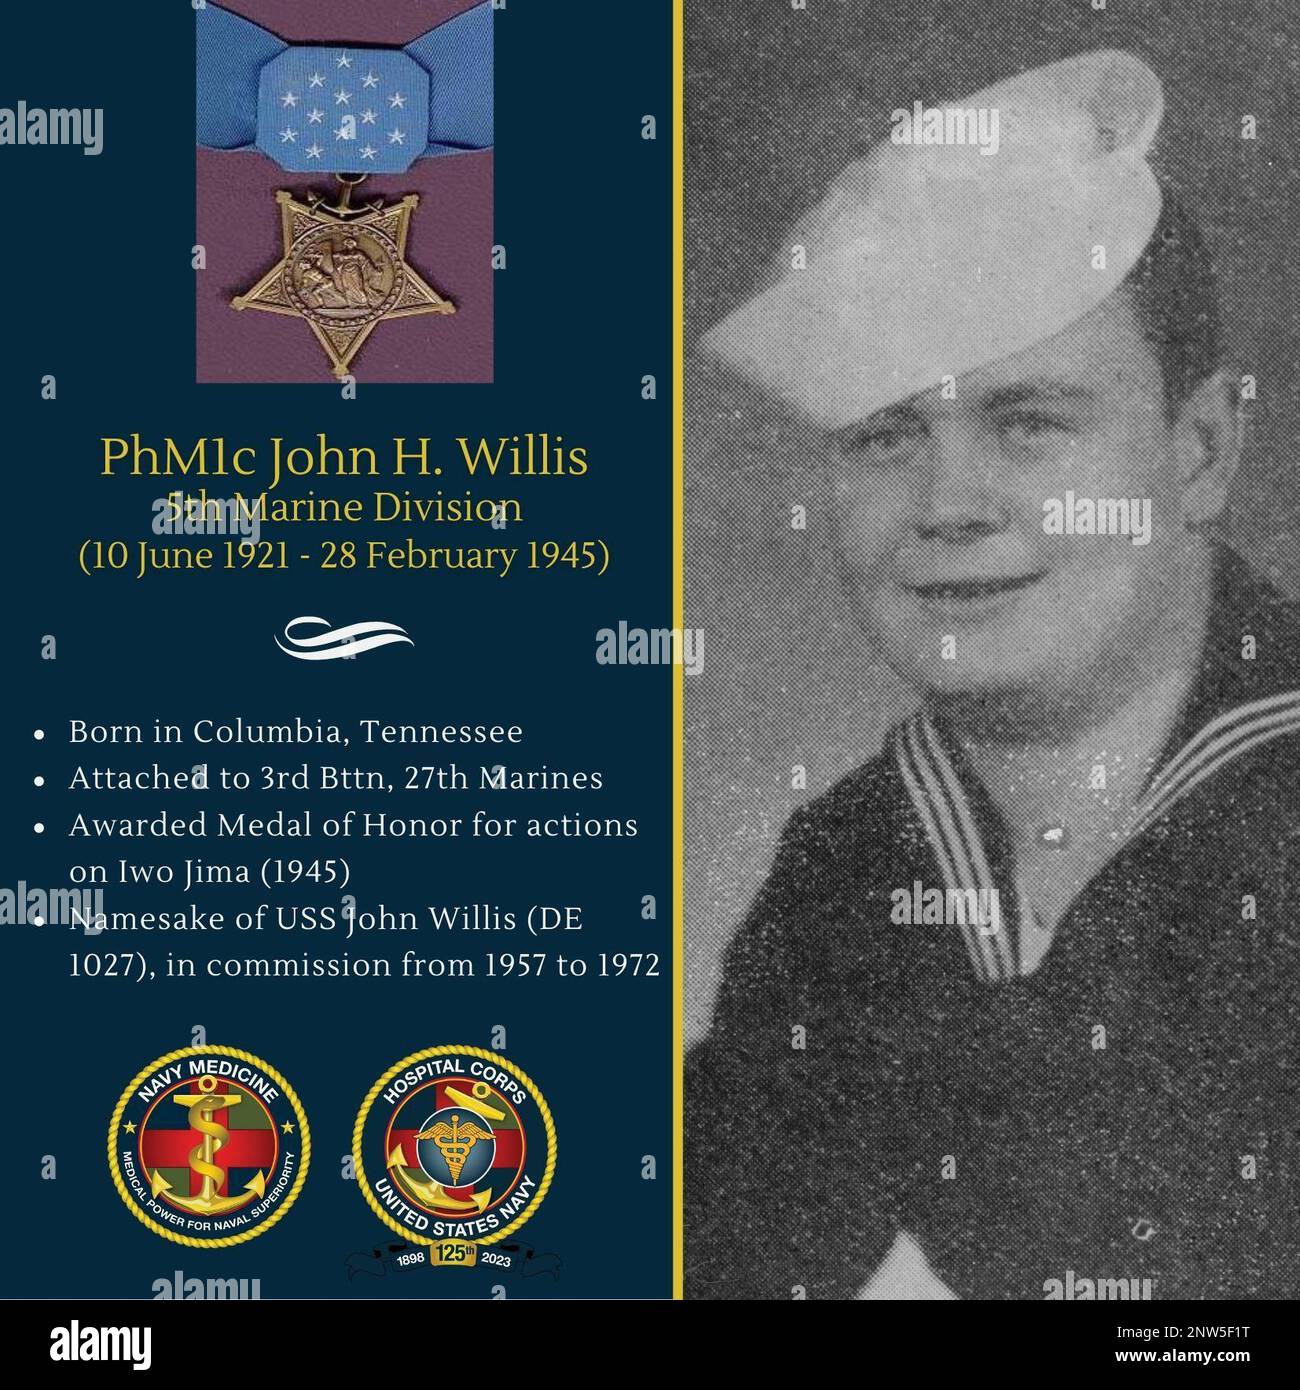 Il 28 febbraio 1945, mentre serviva su Iwo Jima, John Harlan Willis, compagno di prima classe del farmacista, fu costantemente messo in pericolo dal fuoco di artiglieria e mortaio da potenti e reciprocamente sostentanti pillbox e grotte che costellavano la collina 362 nelle difese dell'isola trasversale del nemico. Amministrò risolutamente il primo soccorso ai molti marines feriti durante i furiosi combattimenti ravvicinati fino a quando egli stesso fu colpito dallo scrapchio e fu ordinato di tornare alla stazione di soccorso. Senza aspettare il rilascio medico ufficiale, tornò rapidamente alla sua azienda e, durante un selvaggio contrattacco nemico mano a mano, ardentemente Foto Stock